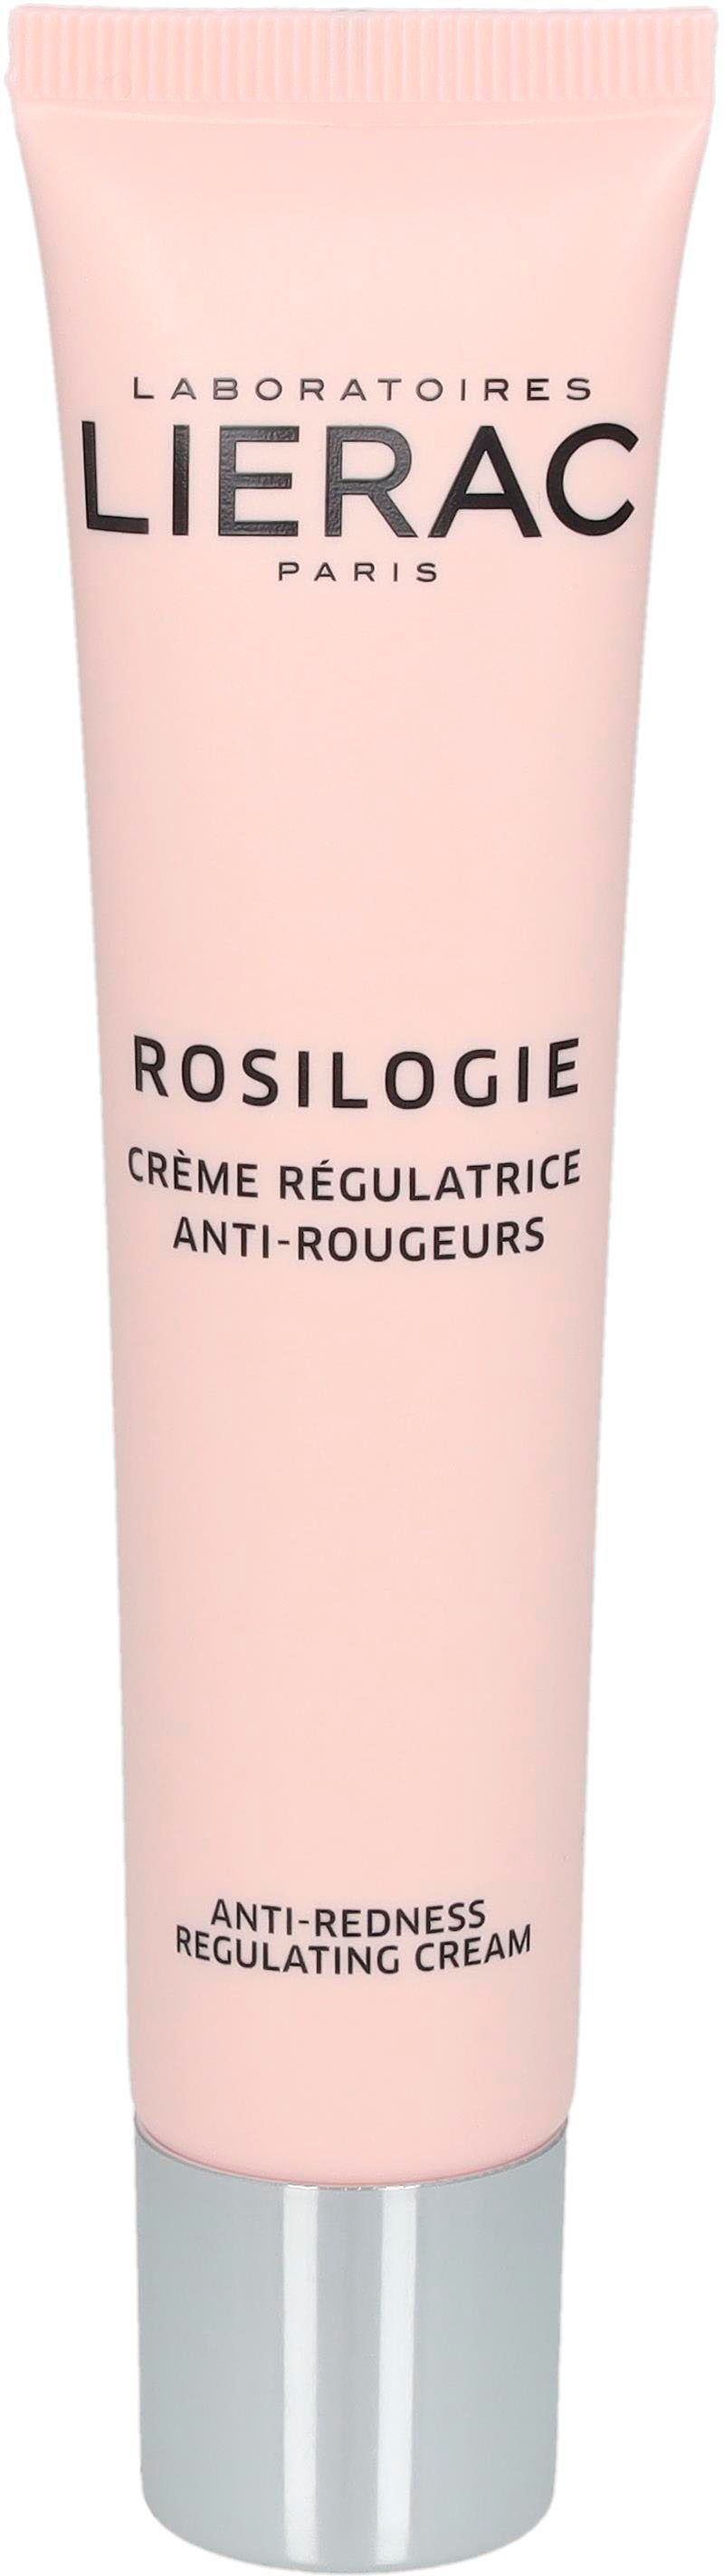 LIERAC Gesichtspflege Rosilogie Creme Regulatrice Anti-Rougeurs, gegen  Rötungen, Karton @ 1 Stueck x 40 ml